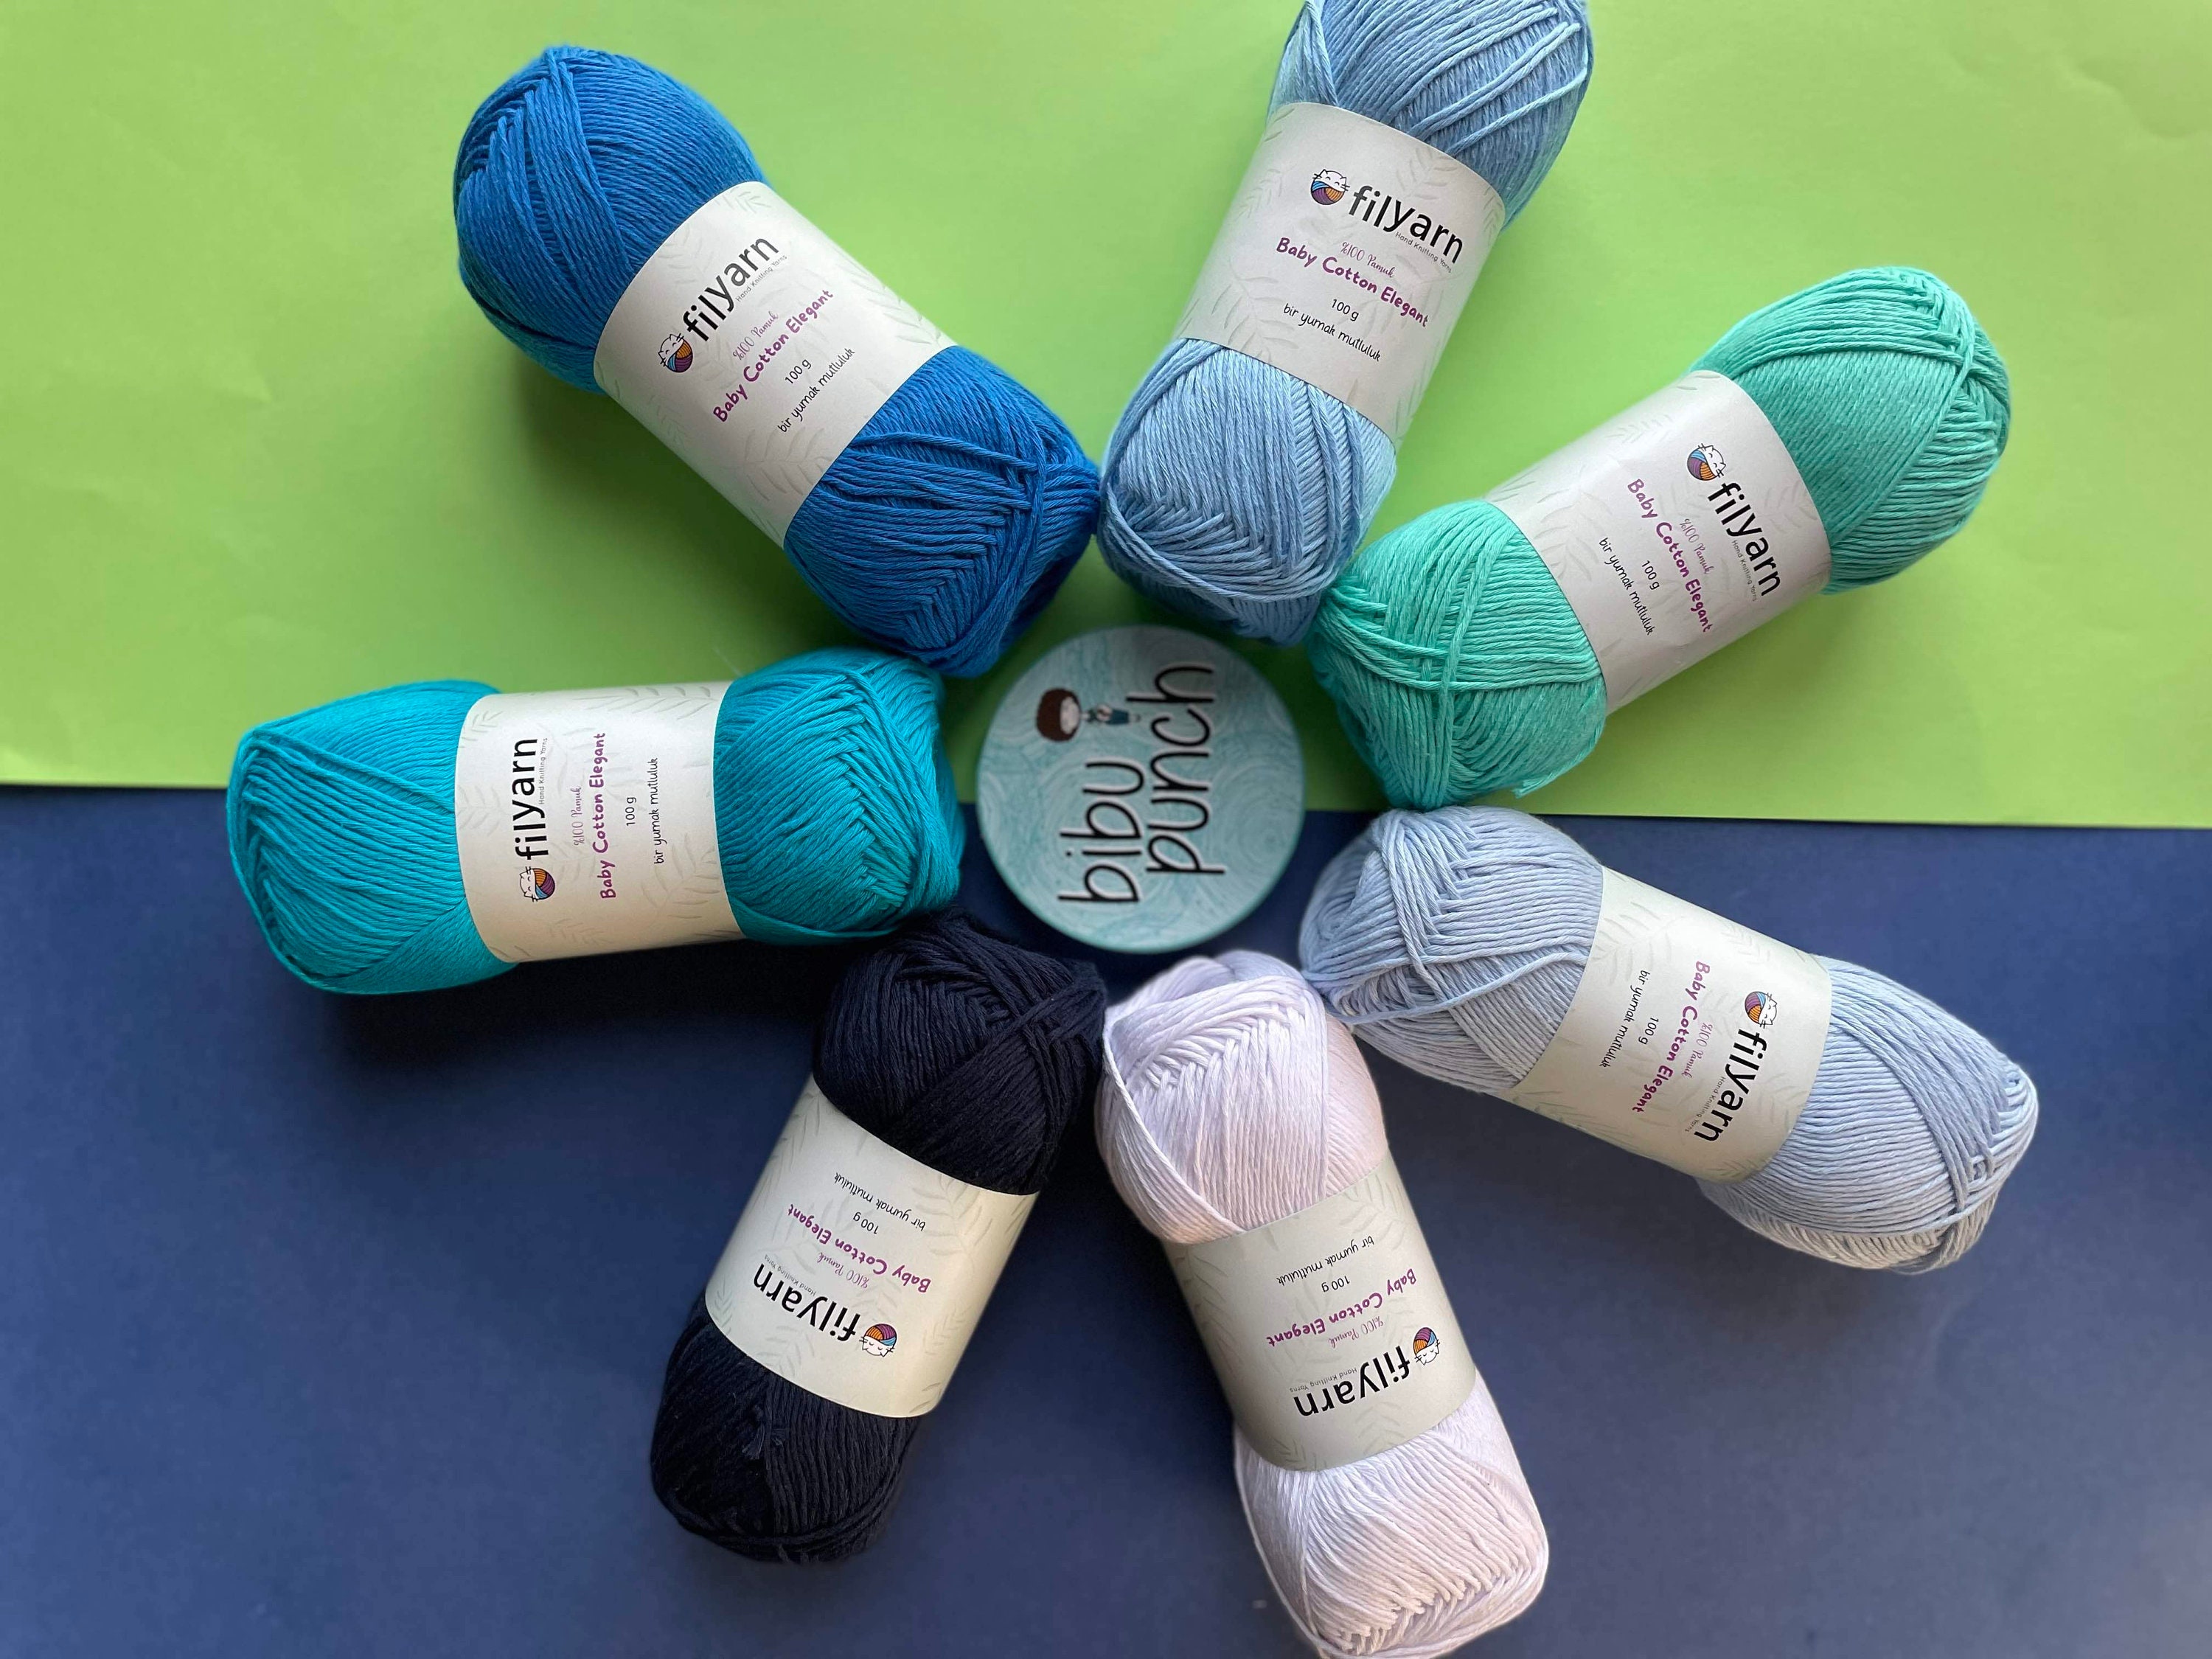 Yarn Pack / Yarn Kit / %100 Cotton Yarns / 7 Pieces Yarn Set / Blue / 100  Gr Each / Punch Needle Yarn / Cotton Amigurumi Yarn / Crochet Yarn 